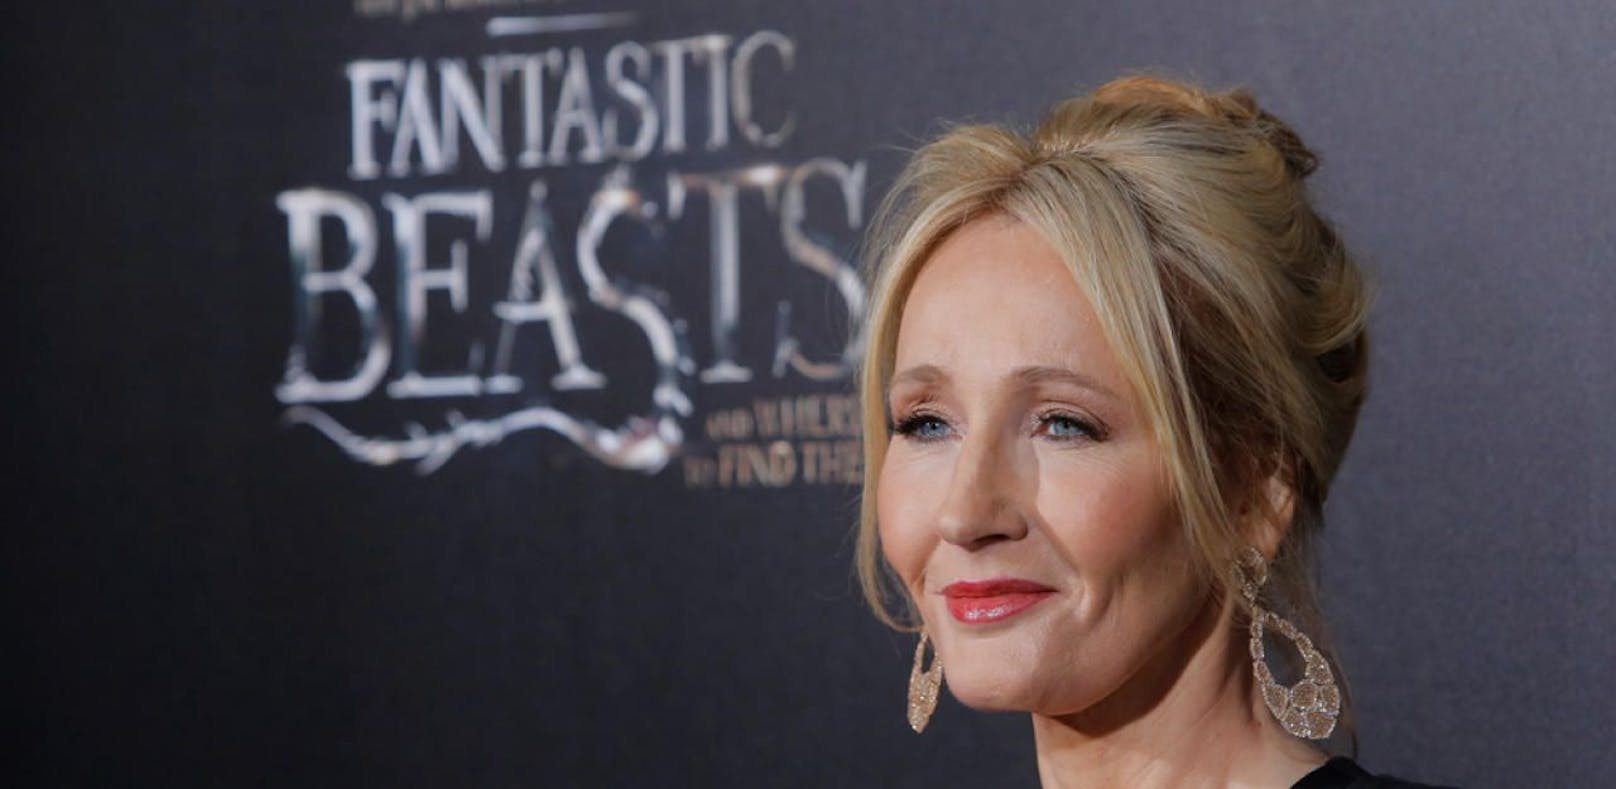 J.K. Rowling blockt Depp-Hasser: Fan enttäuscht